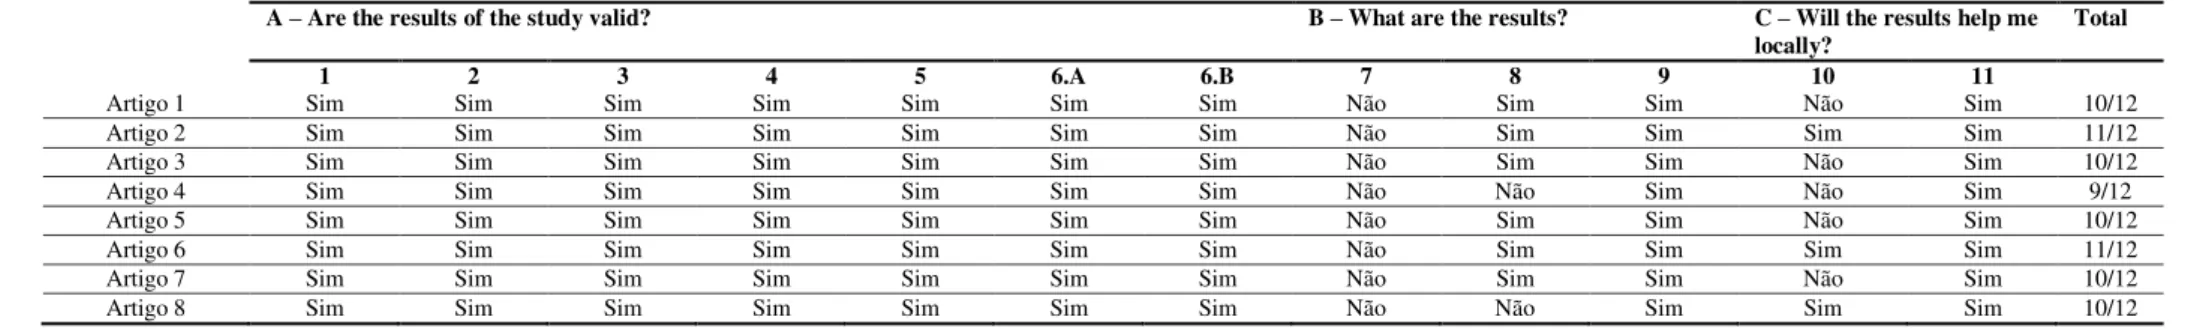 Tabela 1  –  Tabela sistematizada das avaliações dos estudos tipo observacional 